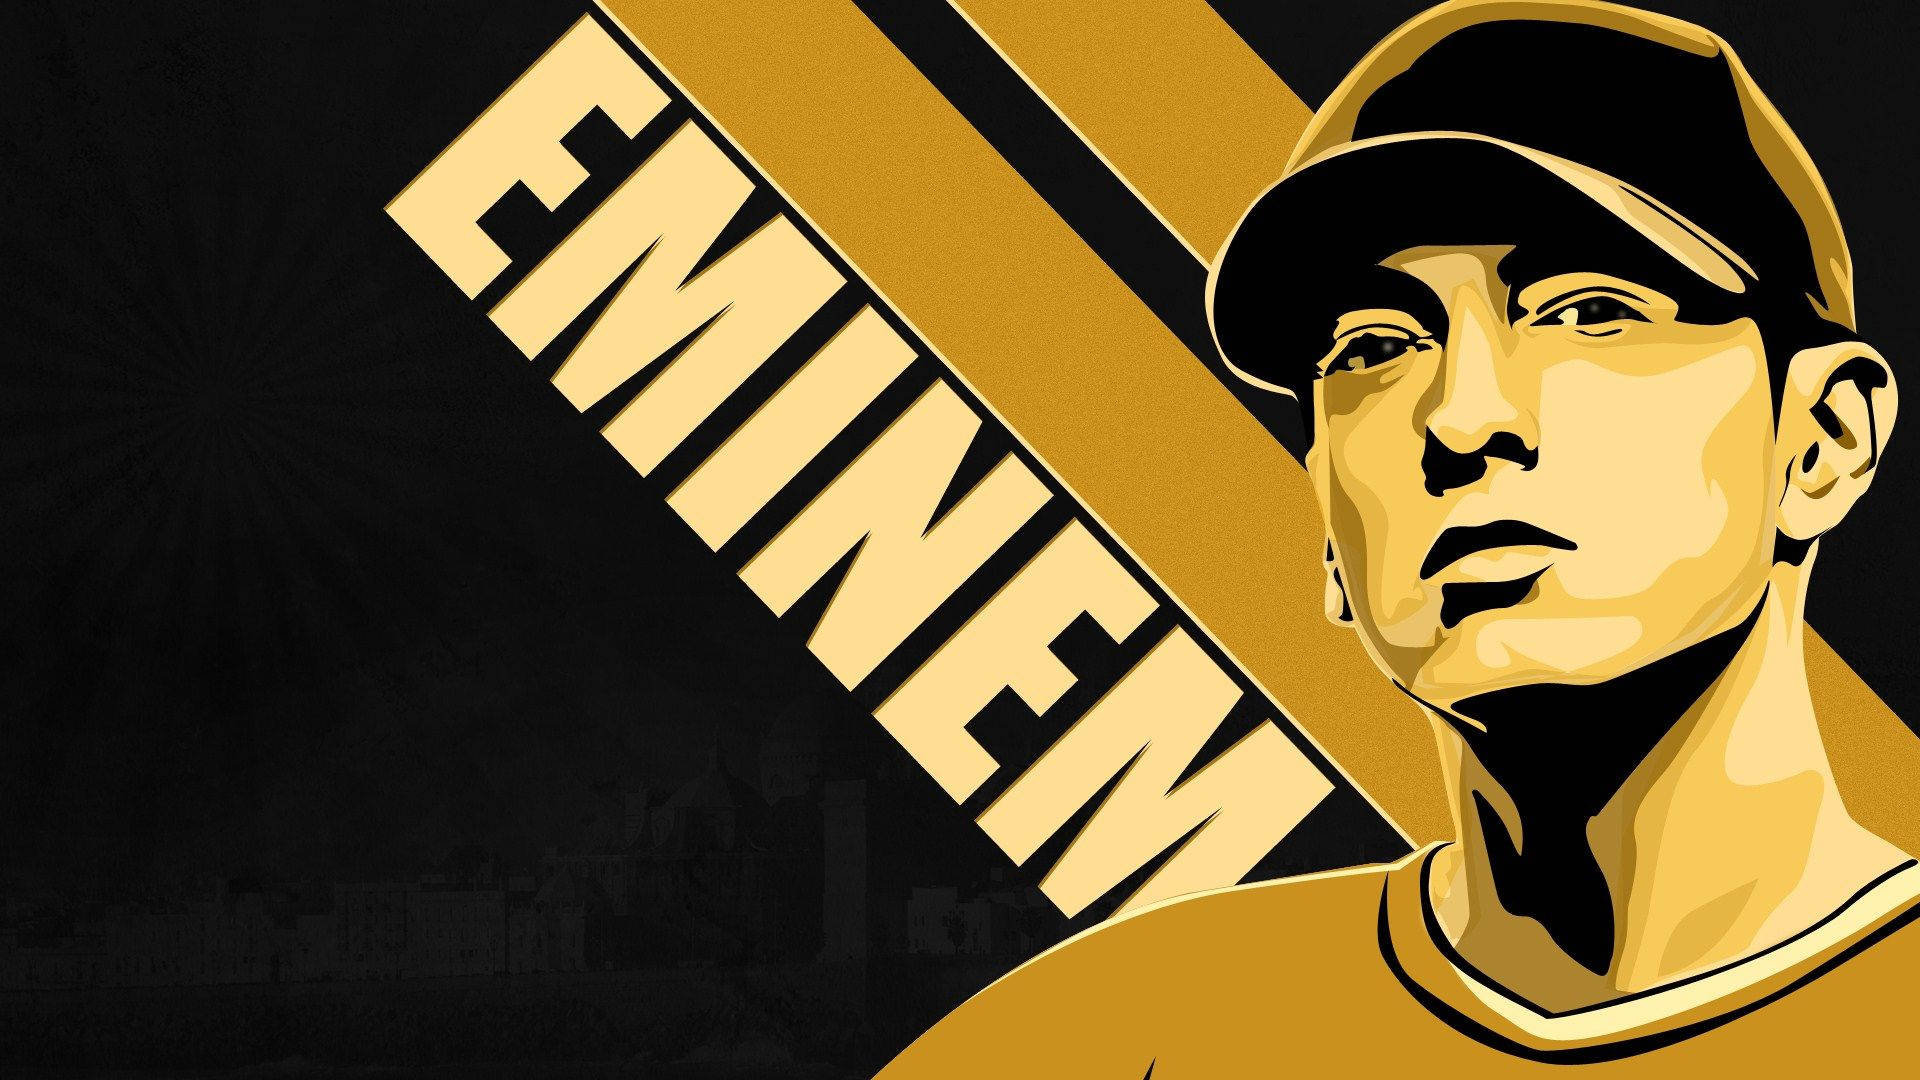 Download Eminem Yellow Vector Art Wallpaper